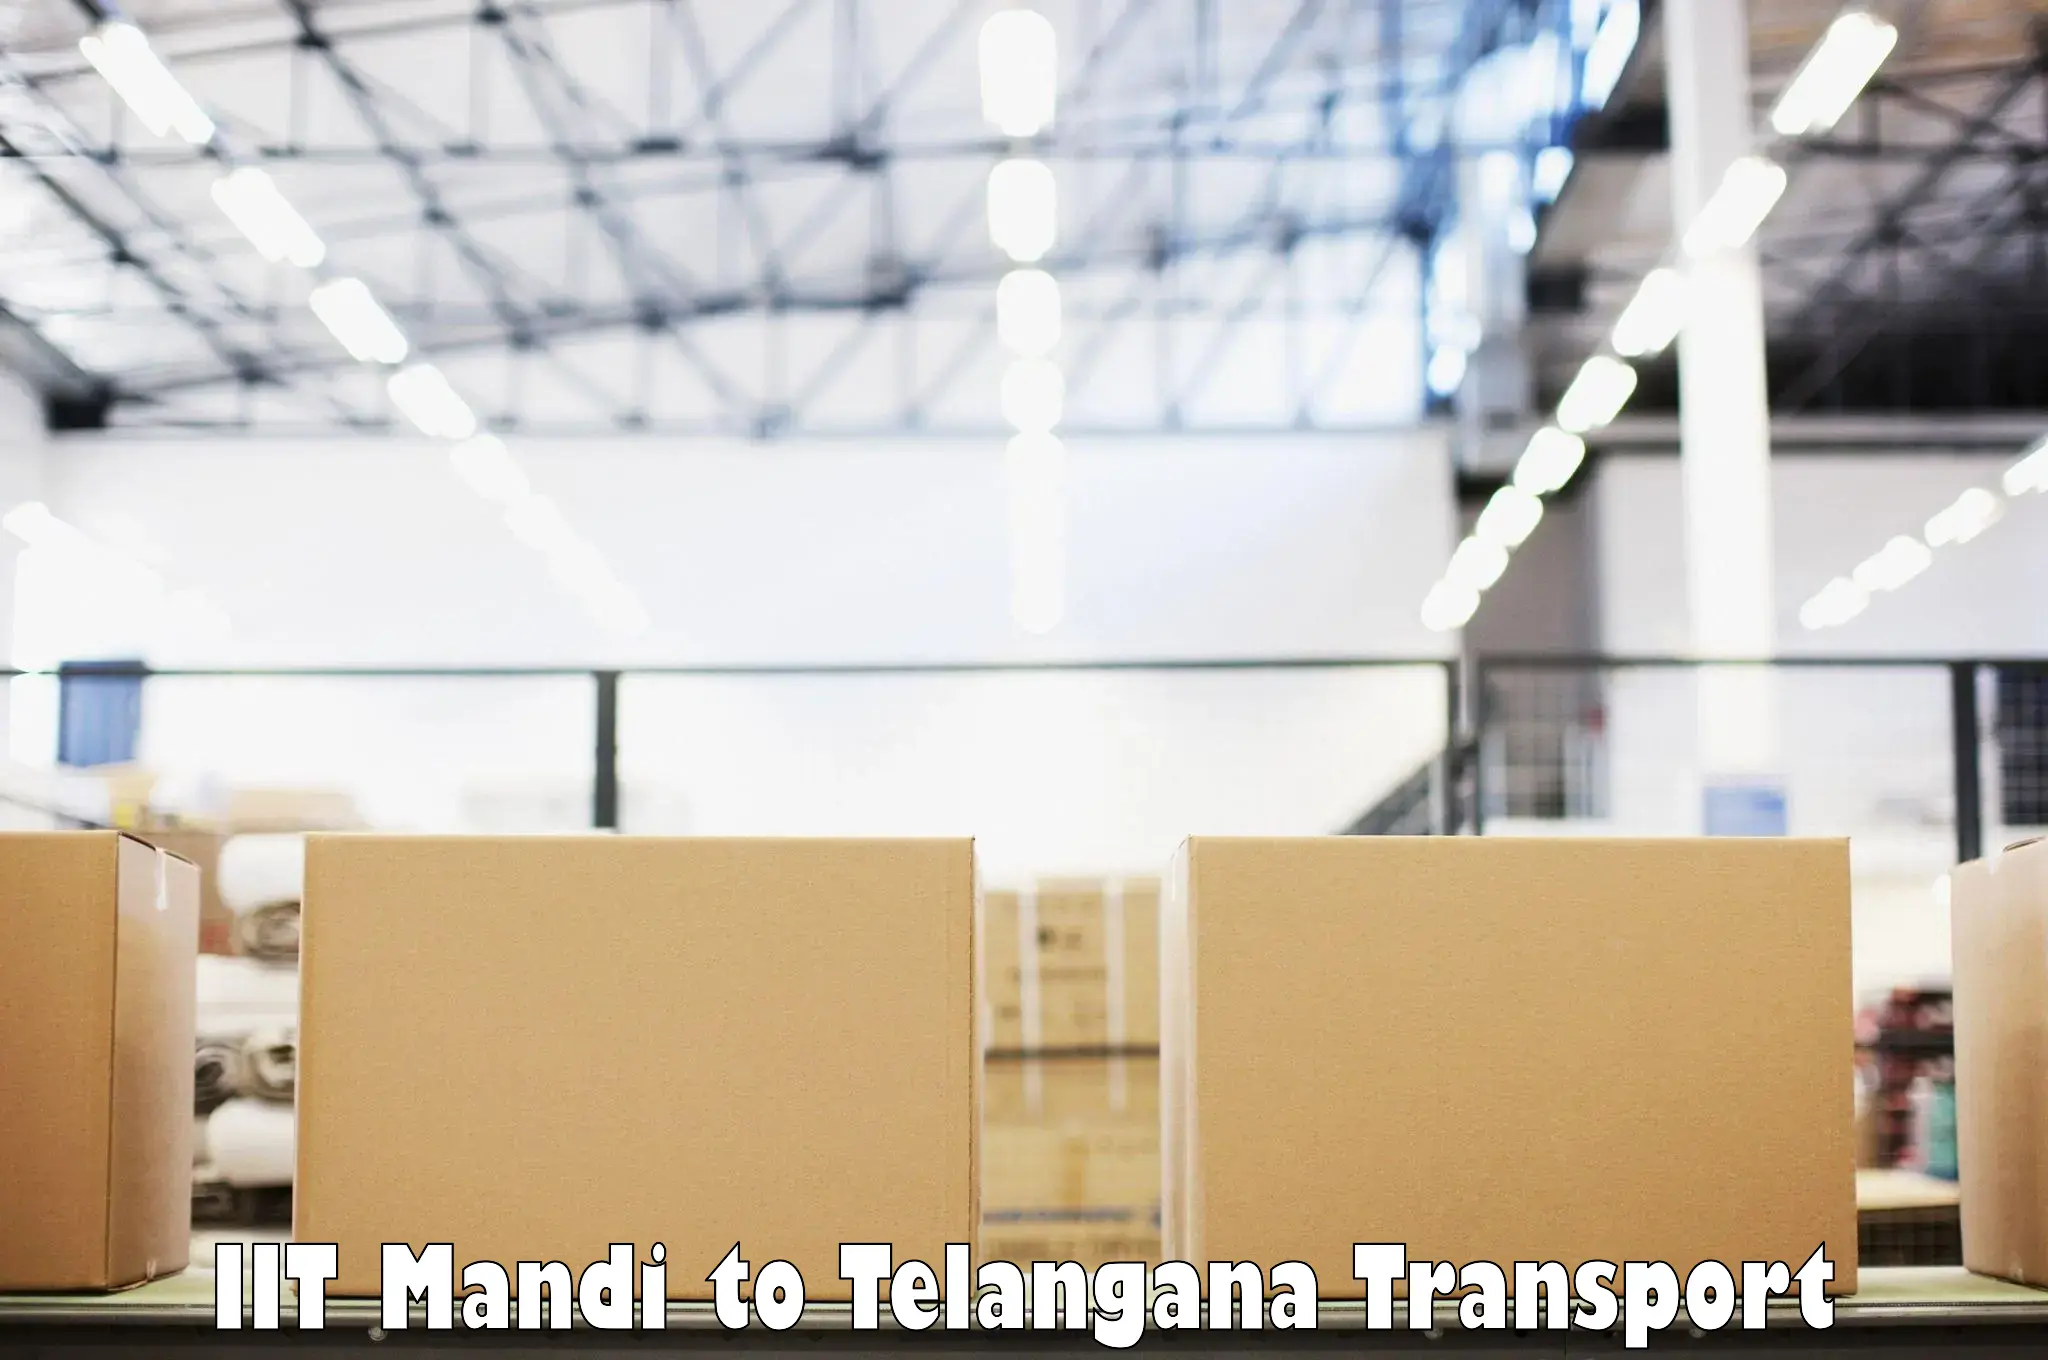 Transport shared services IIT Mandi to Madhira